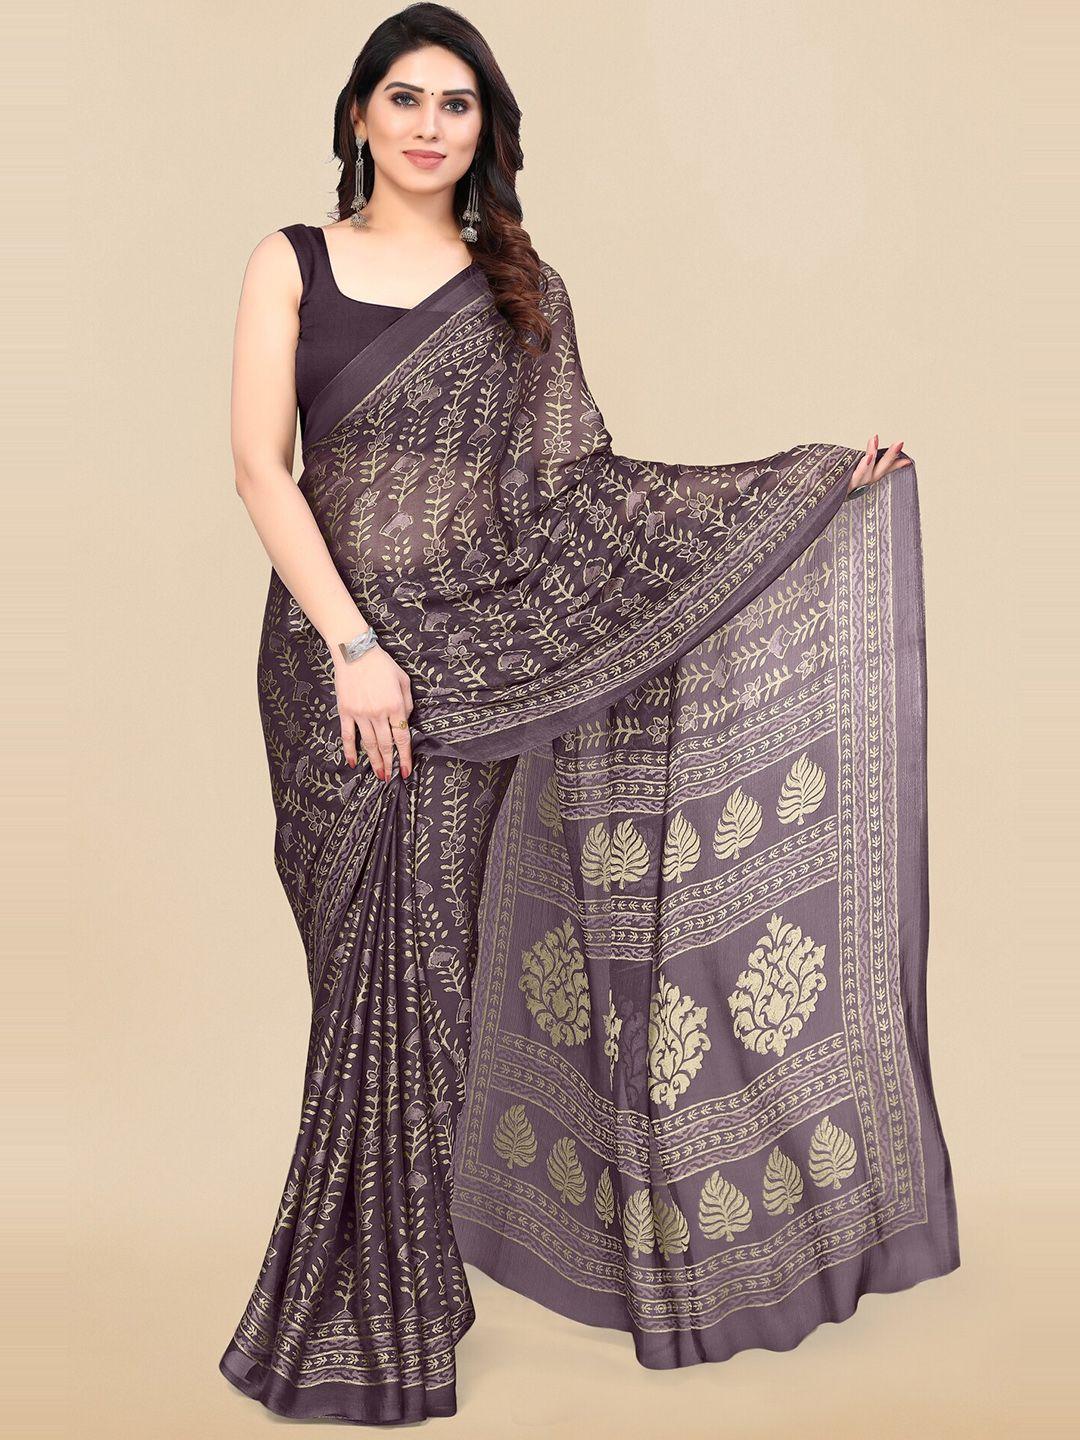 kalini floral printed saree